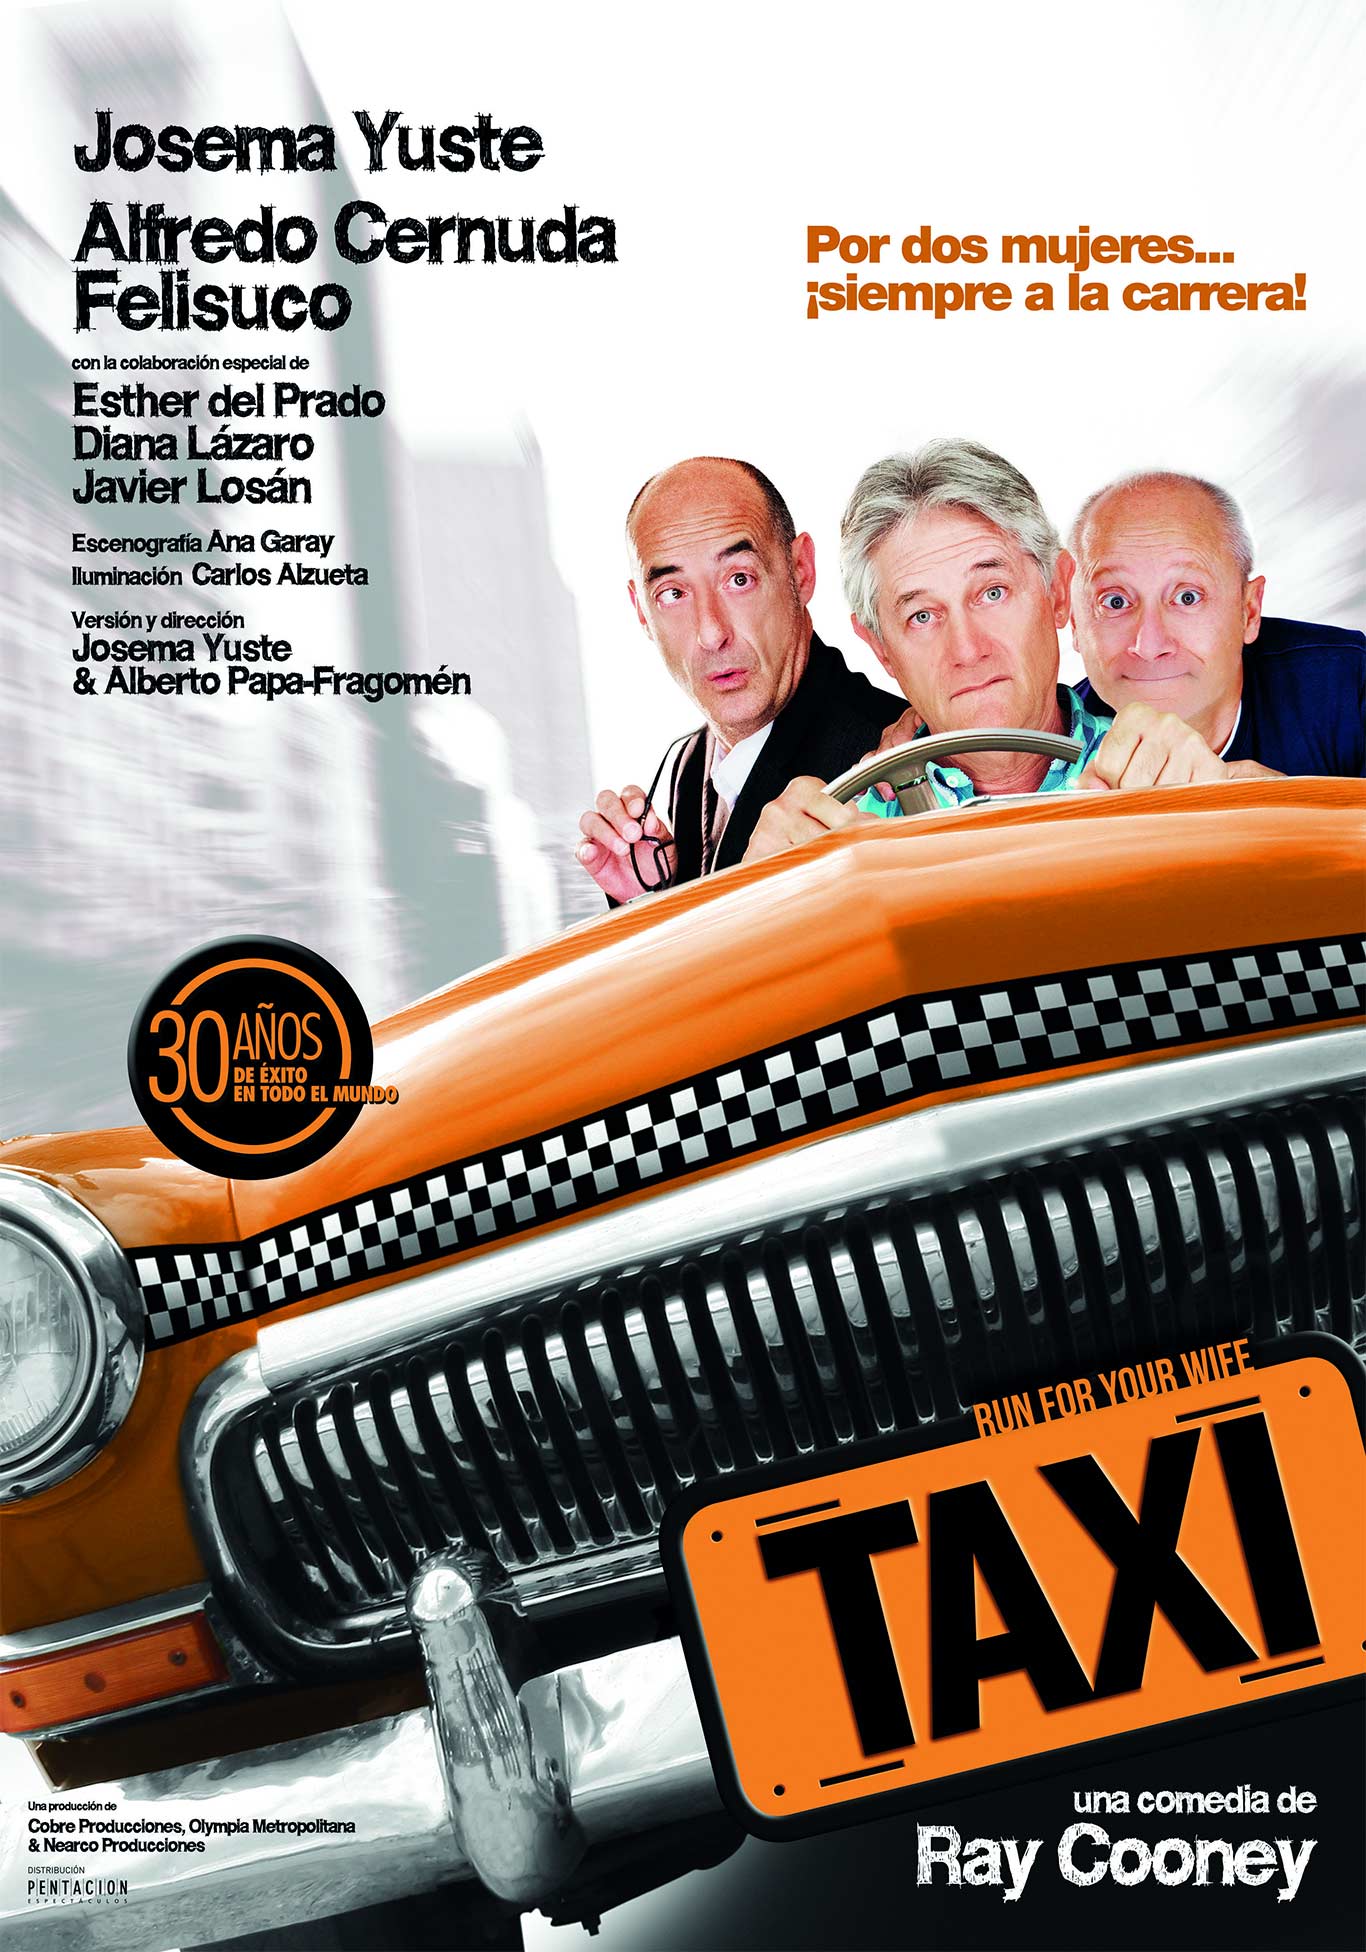 taxi_cartel